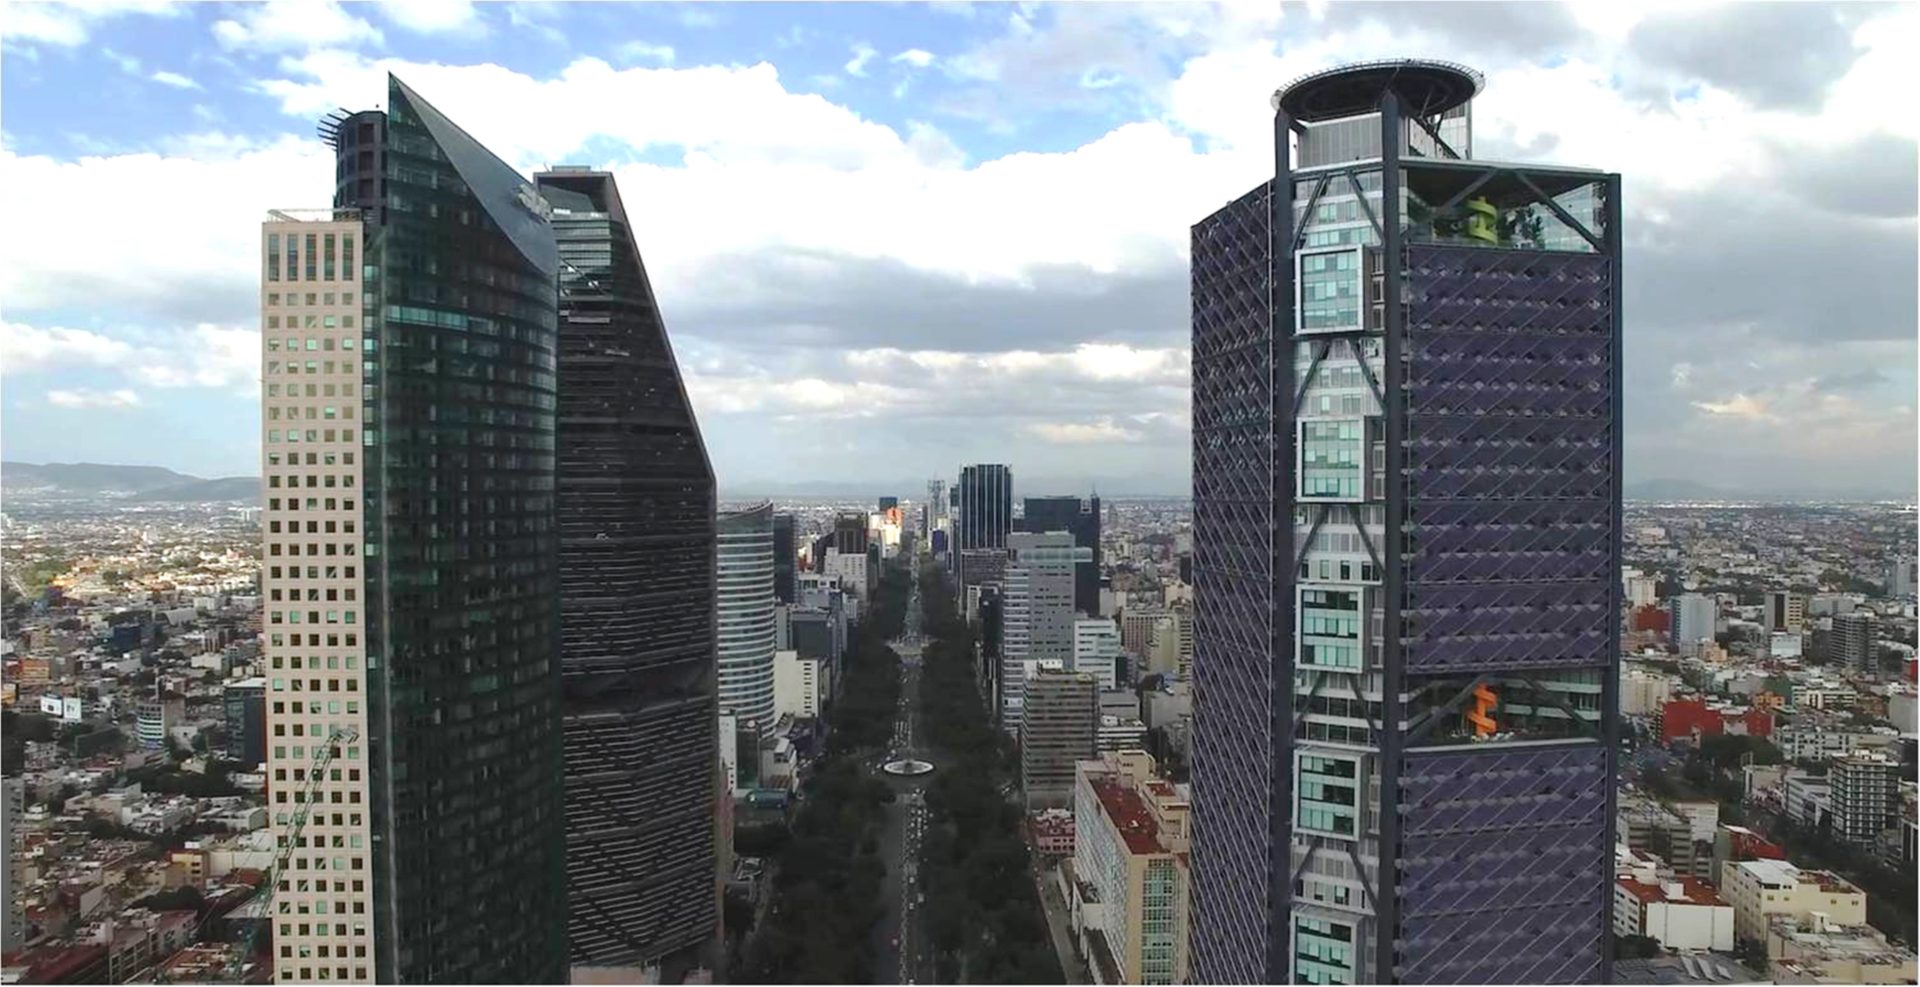 Vista panorámica de la Torre BBVA Bancomer